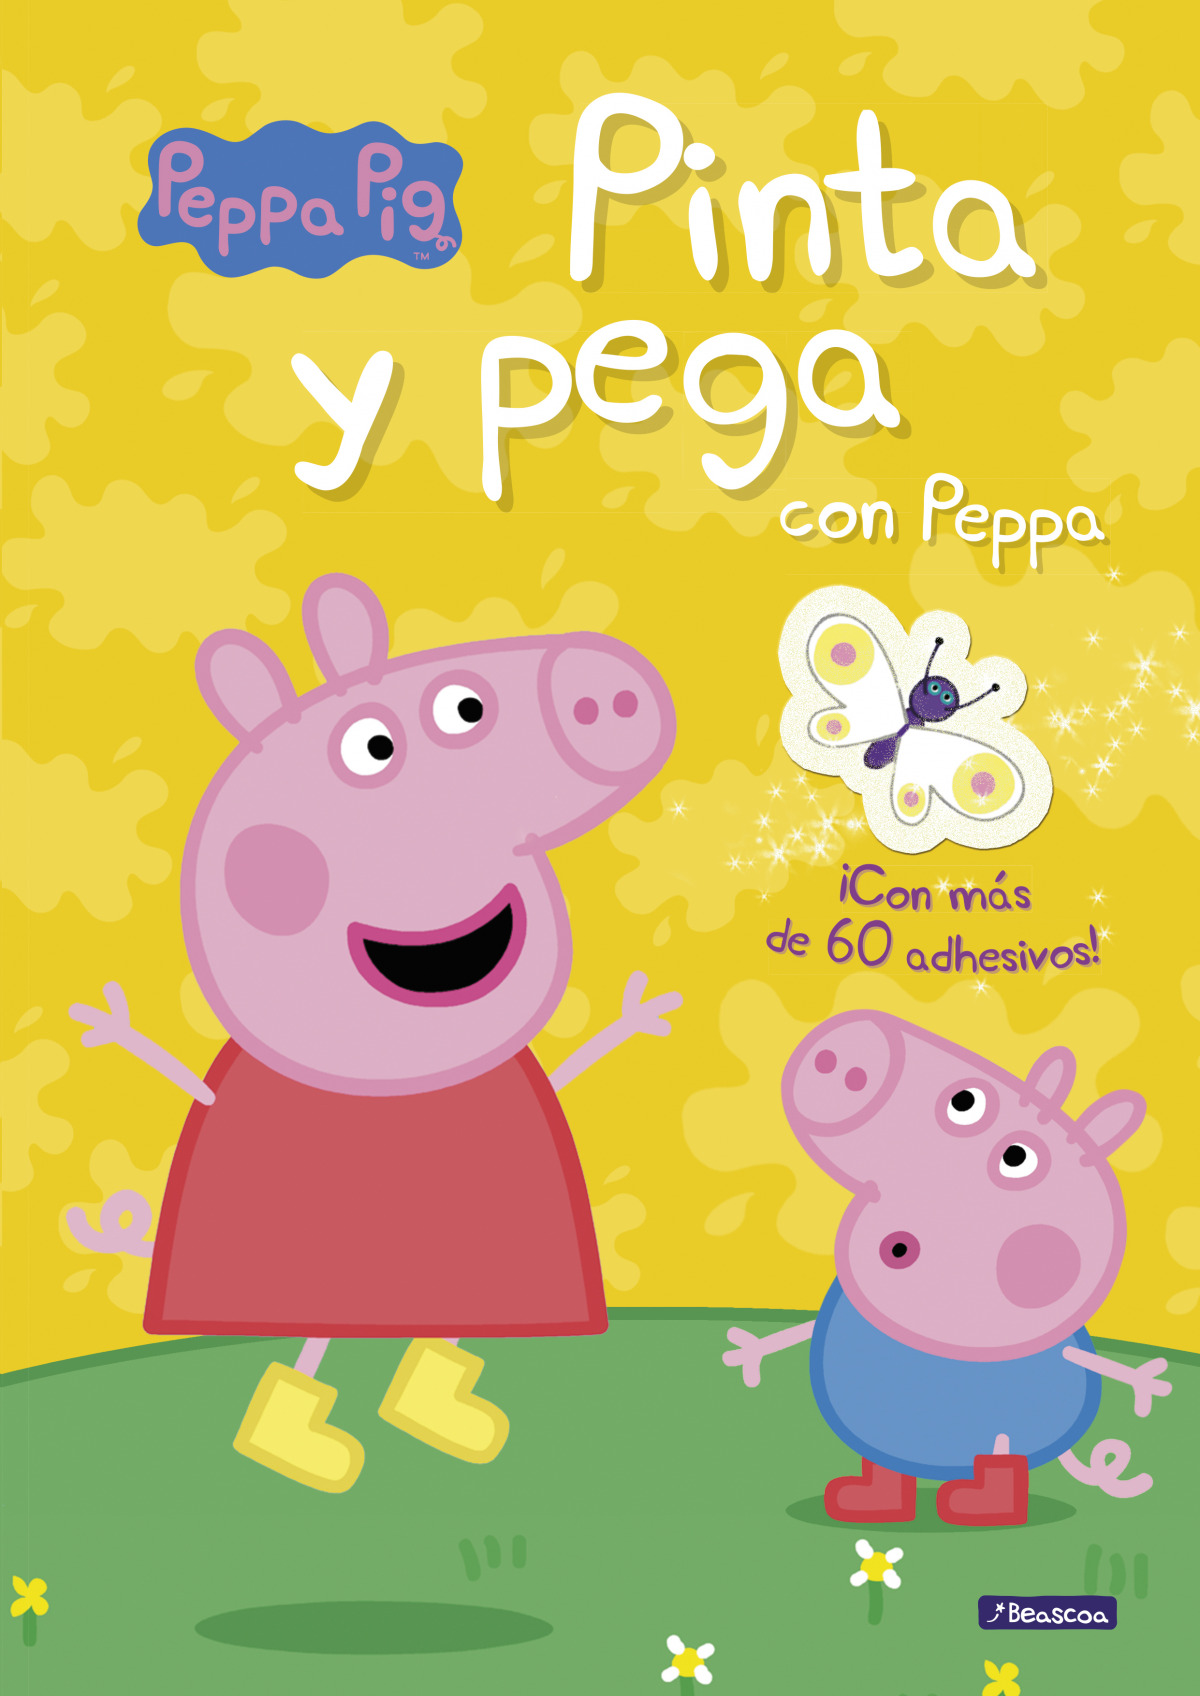 Pinta y pega con Peppa (Peppa Pig) - Librerias 